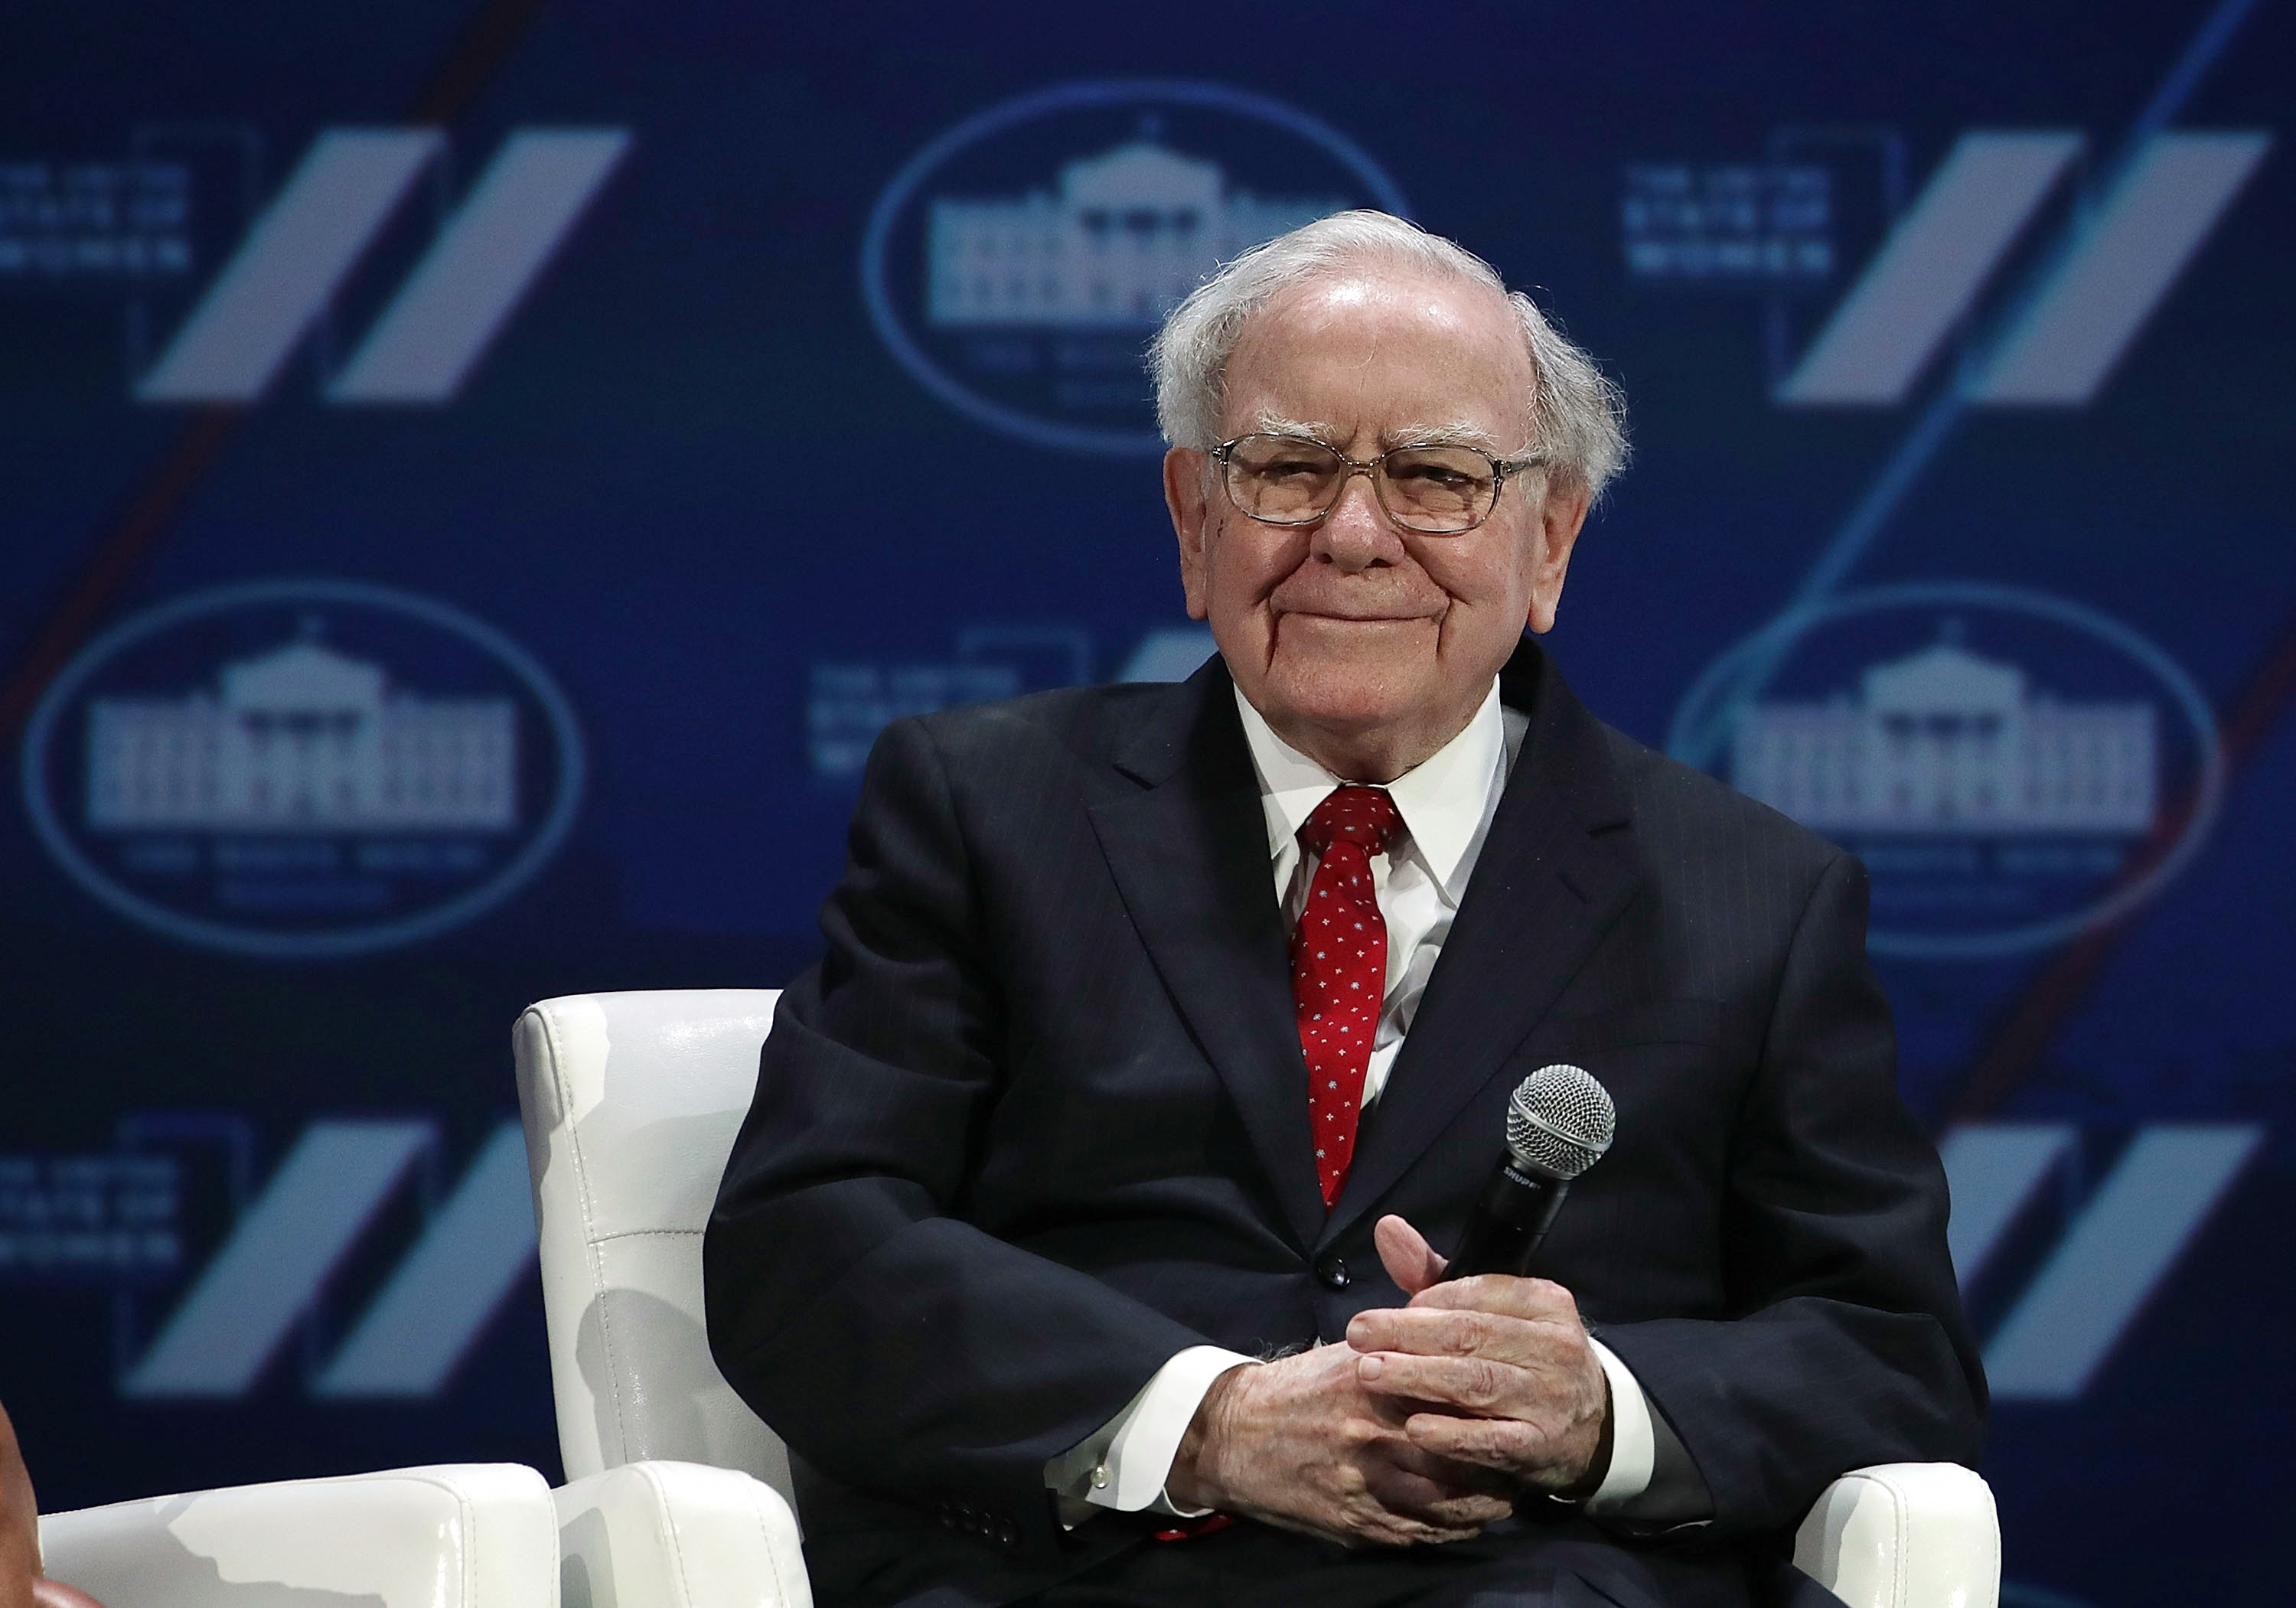 Warren Buffett Likely Lost Billions After Brexit Vote